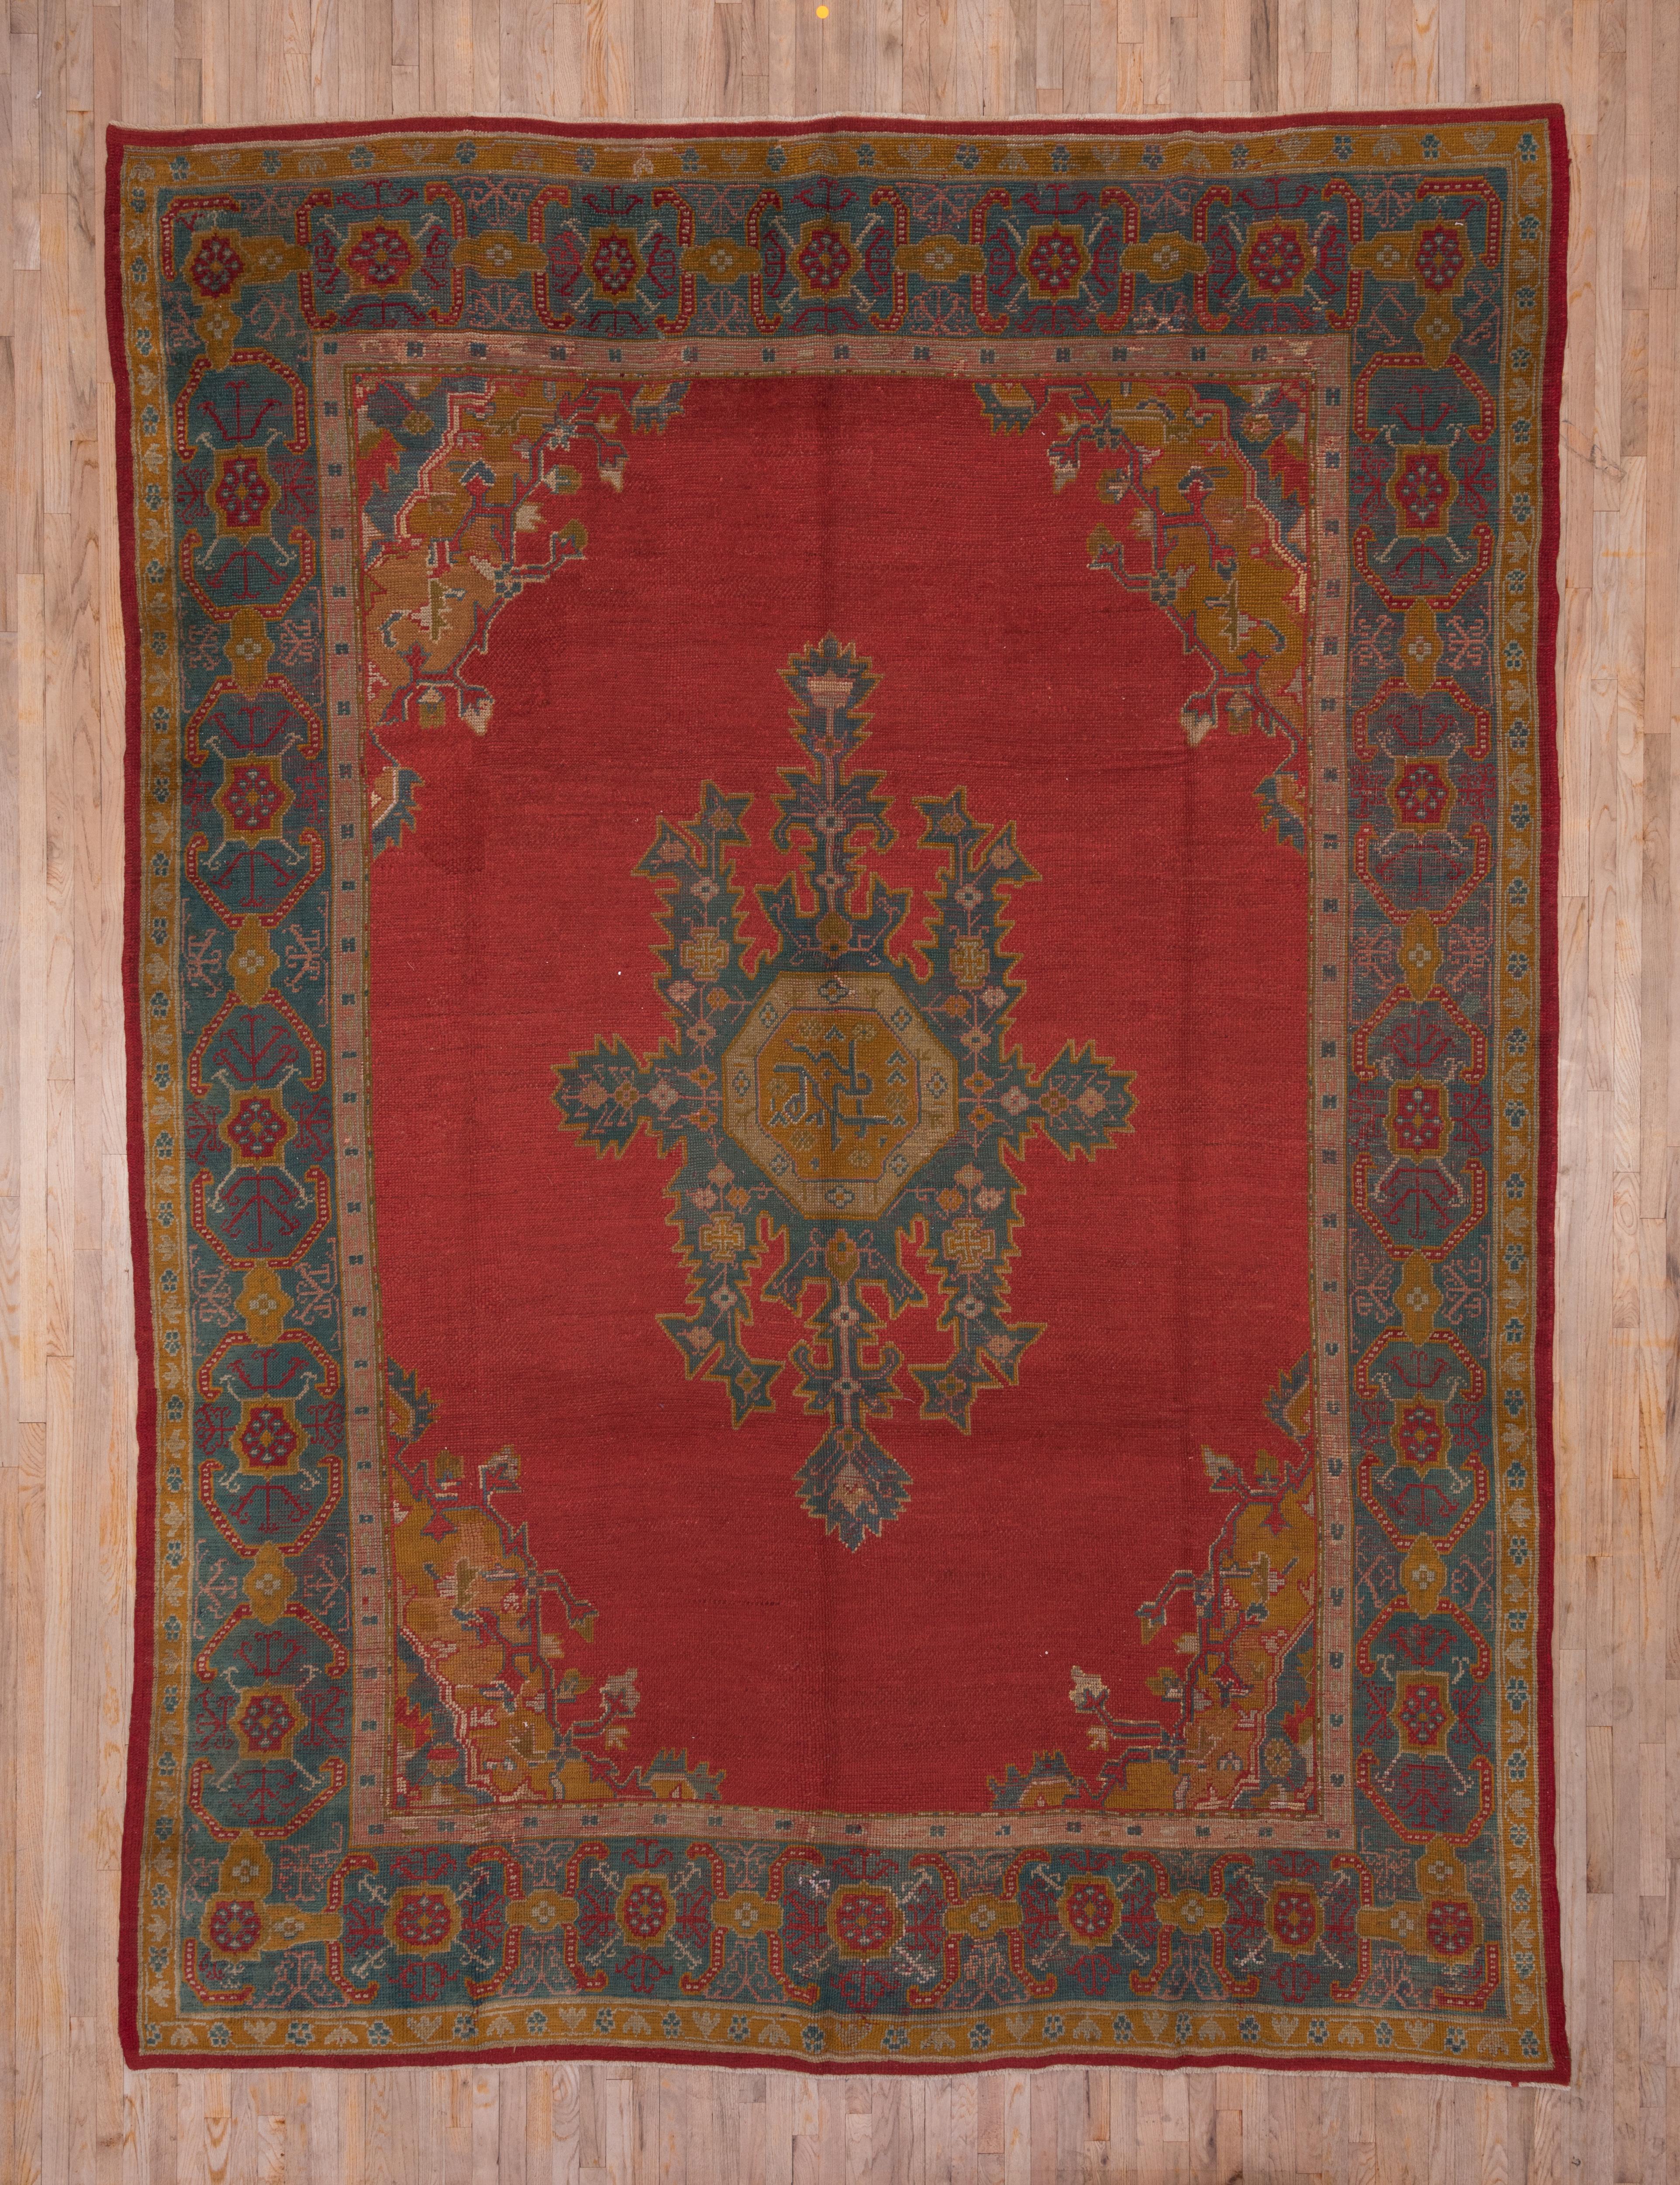 Das türkisrote Feld dieses Teppichs aus einer westanatolischen Werkstatt zeigt ein gezacktes, hängendes und gelapptes hellblaues Medaillon im allgemeinen persischen Heriz-Stil mit einem achteckigen Zentrum und Goldruten-Ecken, aus denen kleine